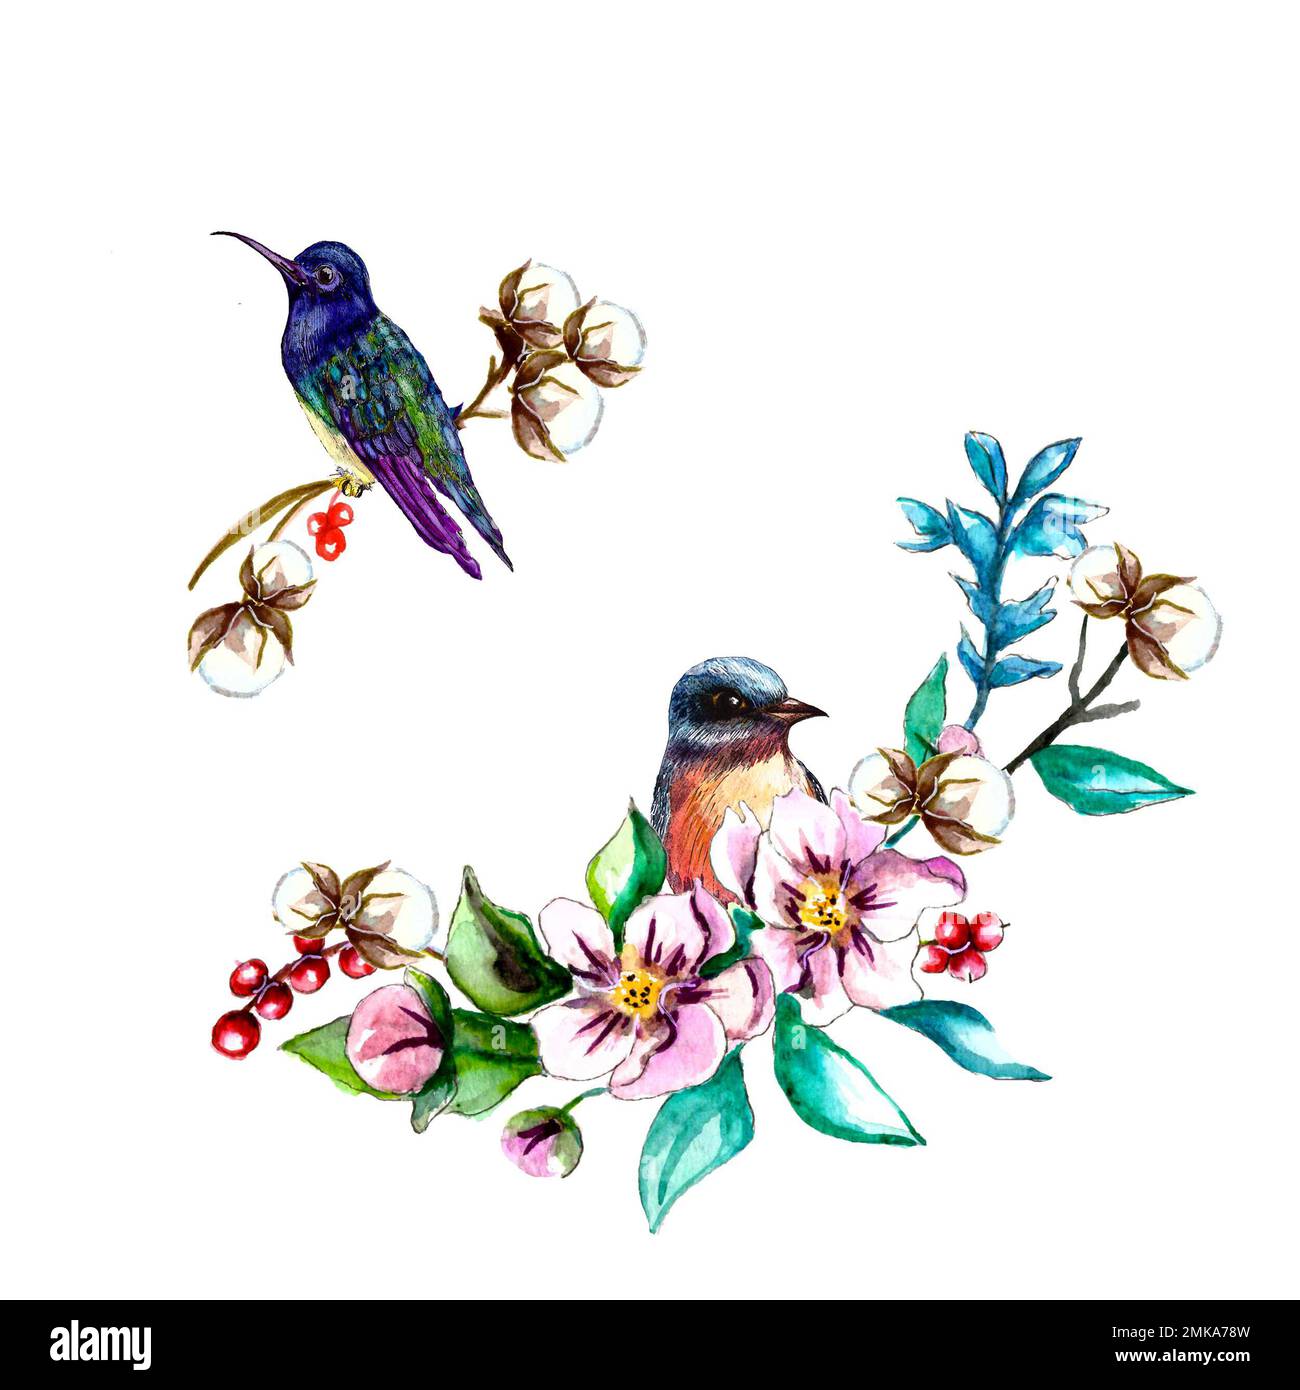 Aquarelle illustration à la main de fleurs fleuries avec des oiseaux. Bouquet d'aquarelle avec brunch oiseau et coton Banque D'Images